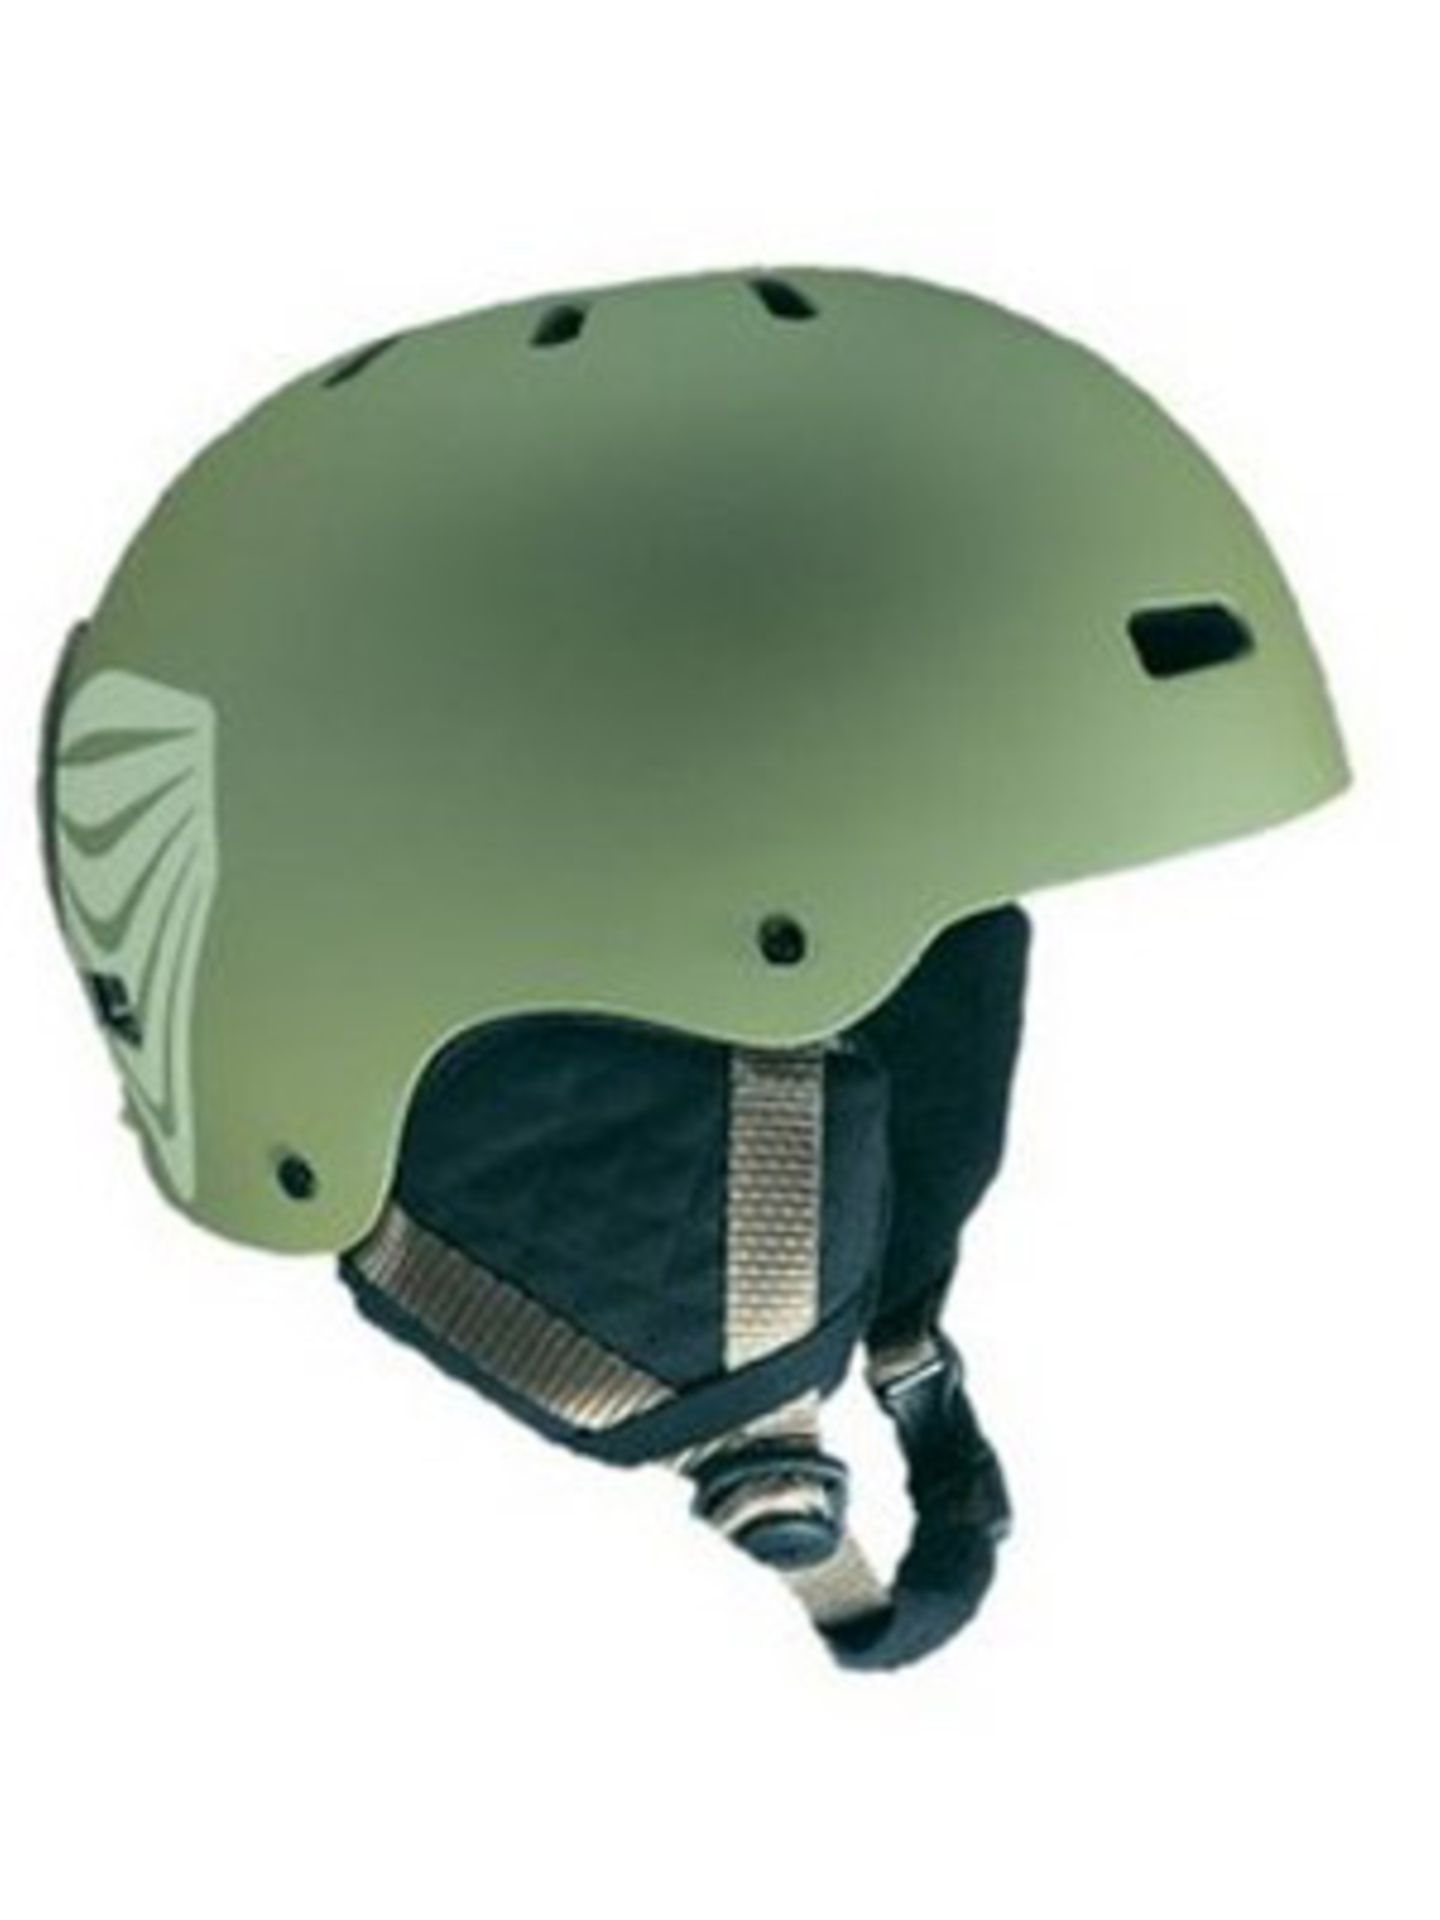 Snowboard Helm für ca. 50 Euro